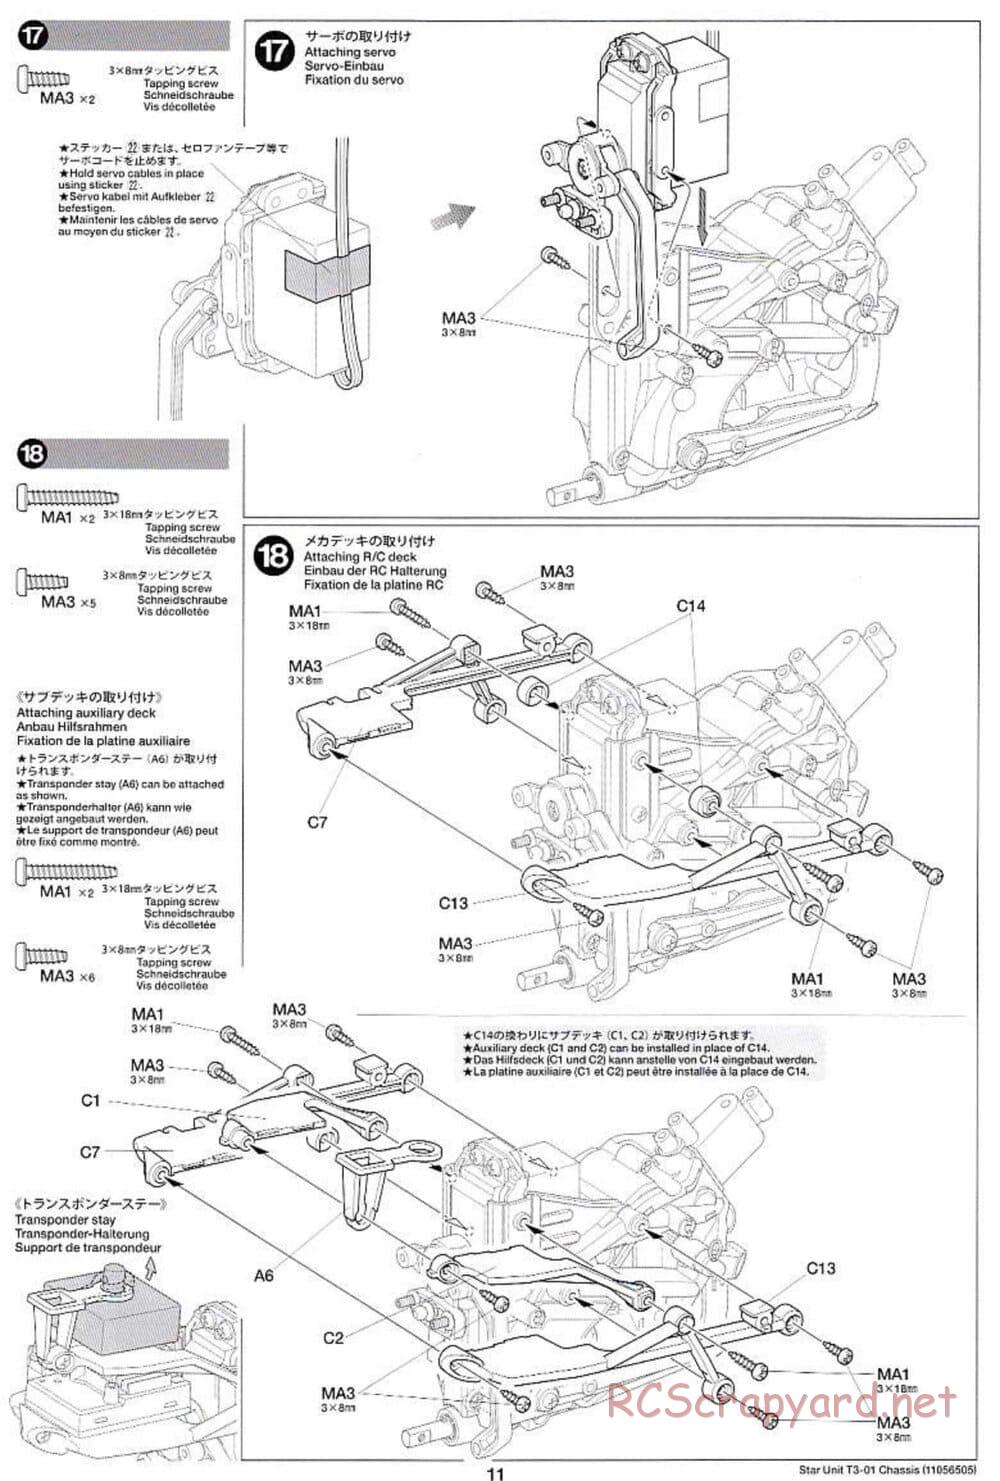 Tamiya - T3-01 Chassis - Manual - Page 11